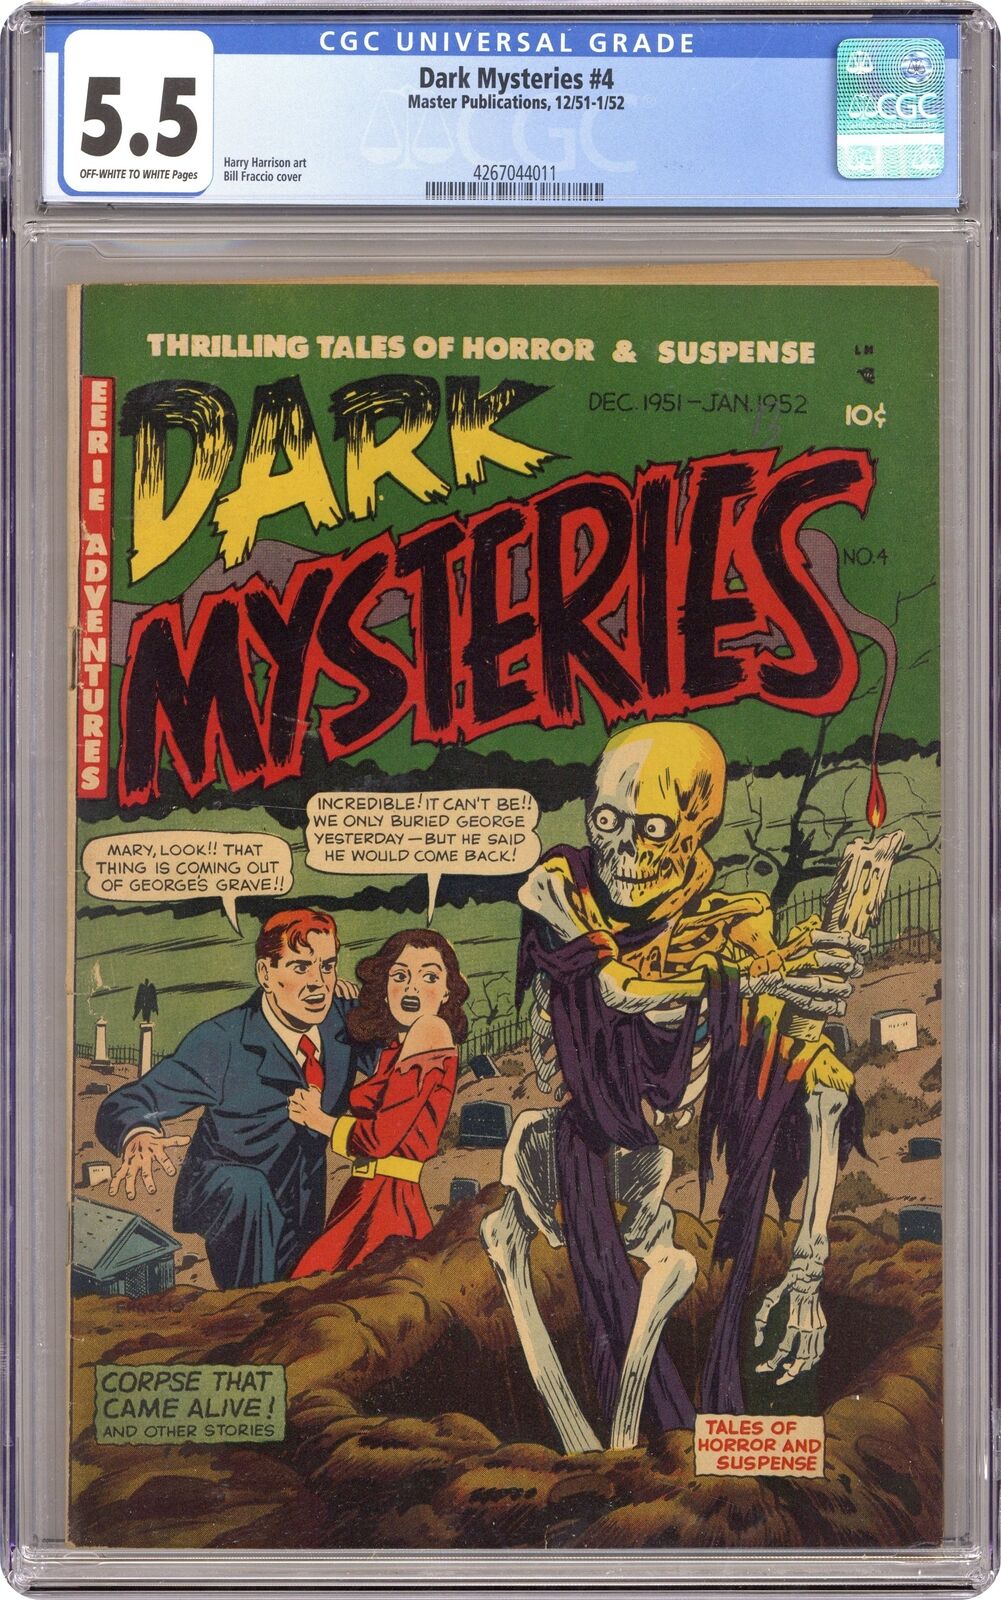 Dark Mysteries #4 CGC 5.5 1952 4267044011